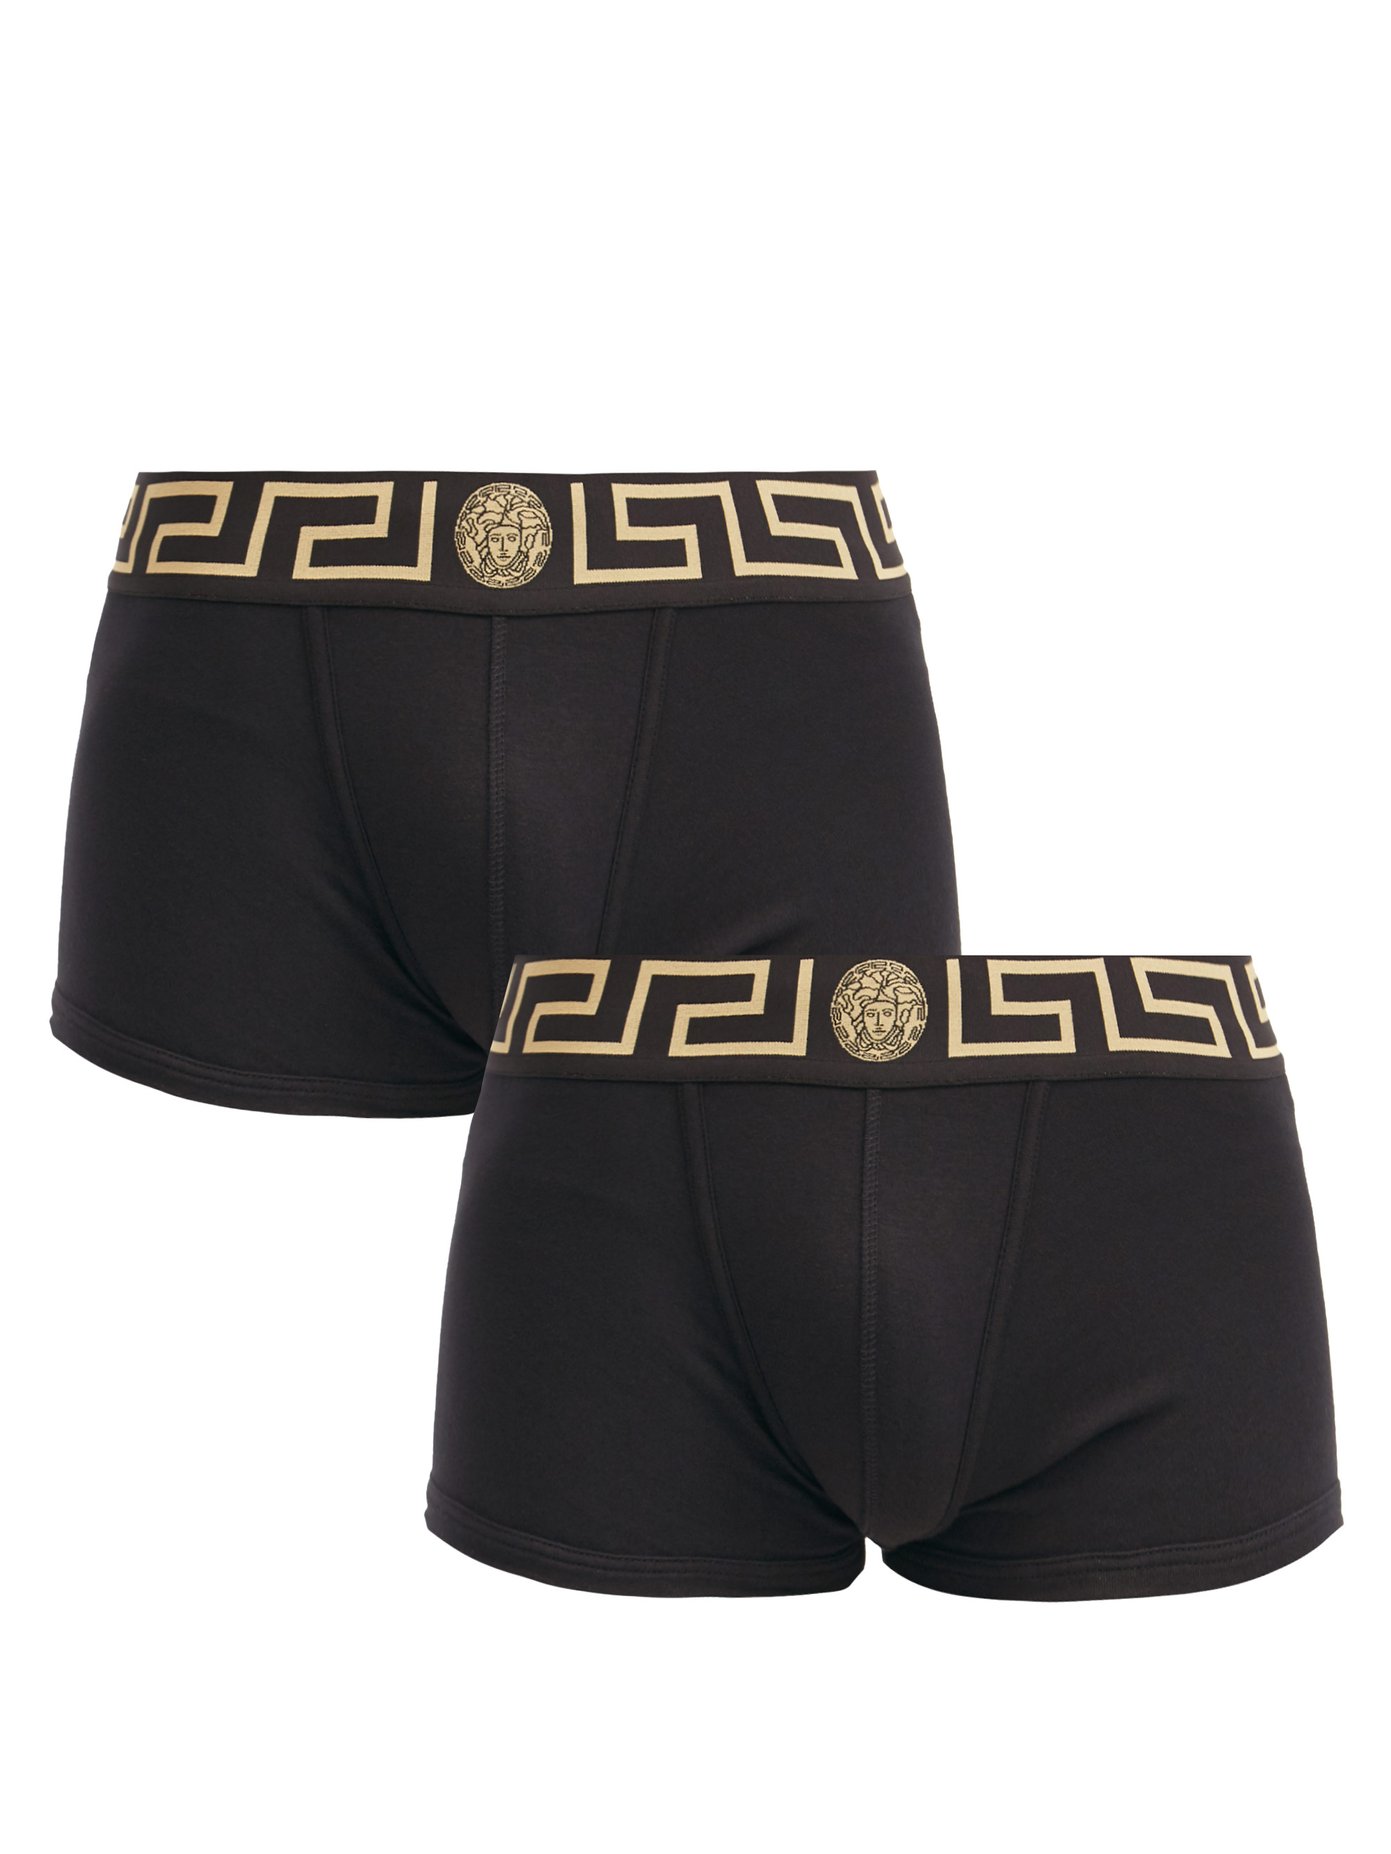 versace boxer underwear